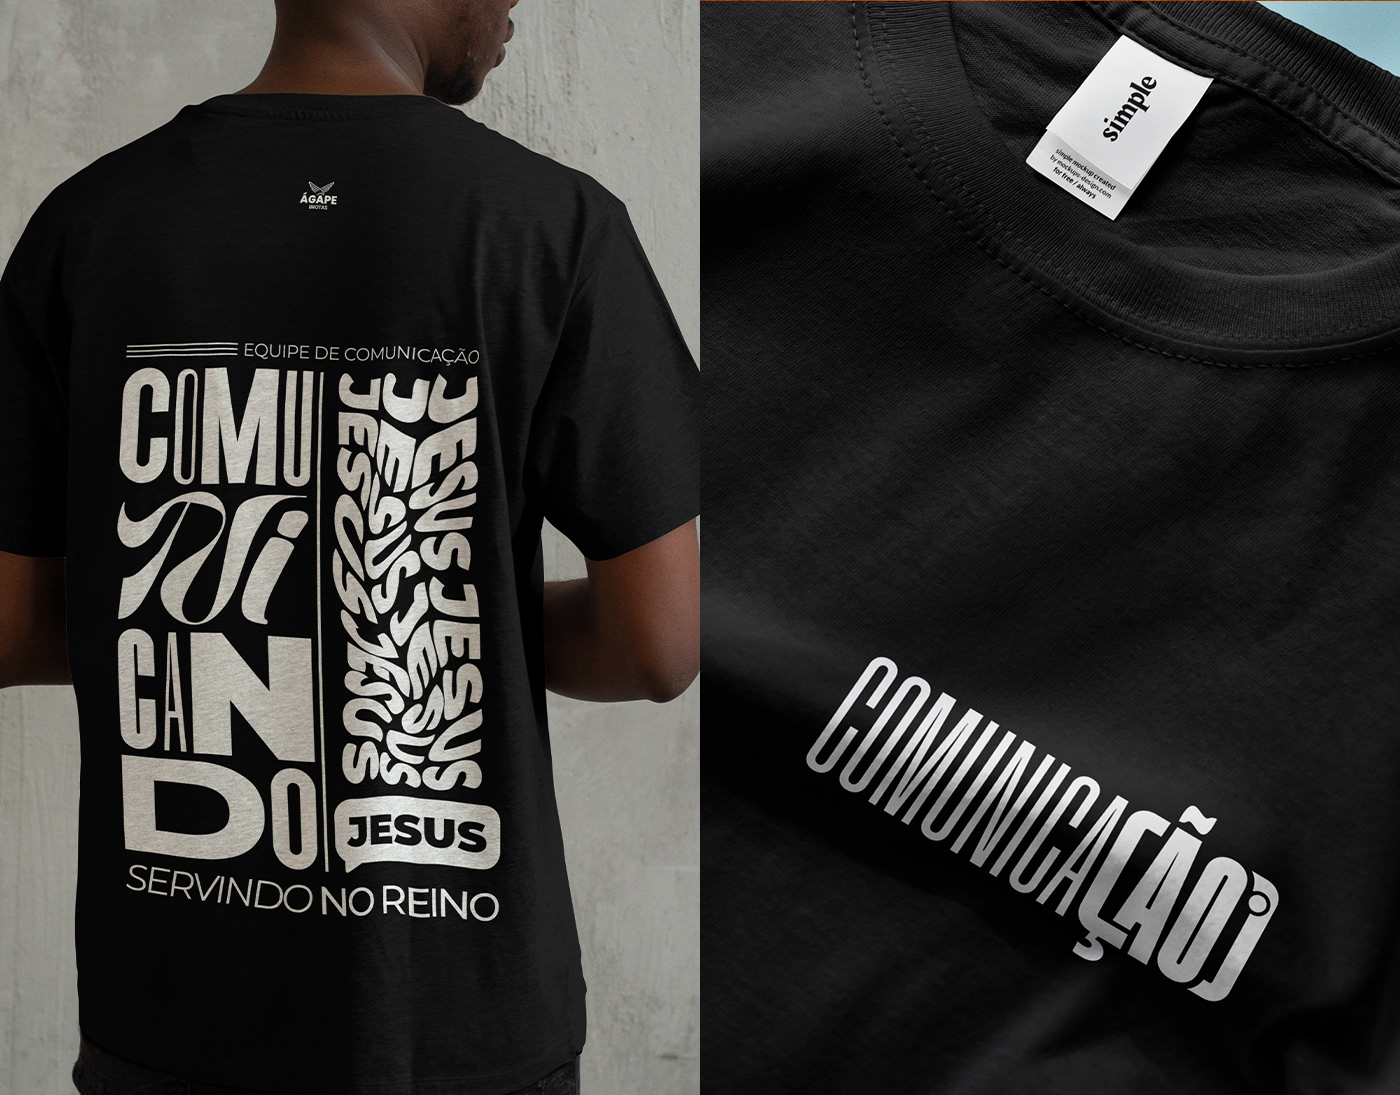 midia camisa shirt tshirt T-Shirt Design Estampa Igreja church comunicação медиа design equipe communication team Ministerio